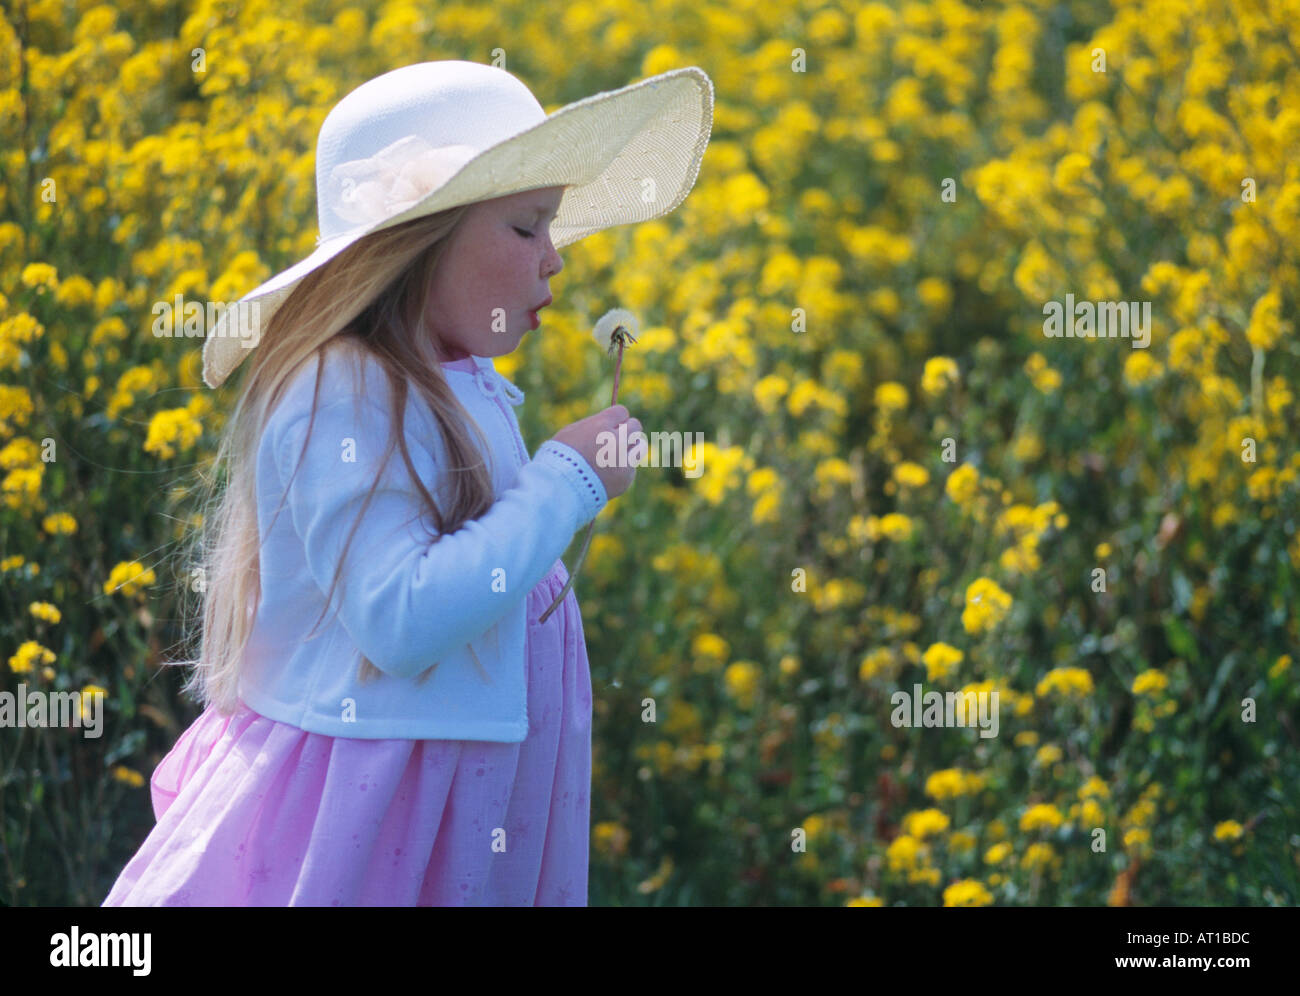 Little girl in hat blowing dandelion in field of  yellow rapeseed flower Stock Photo